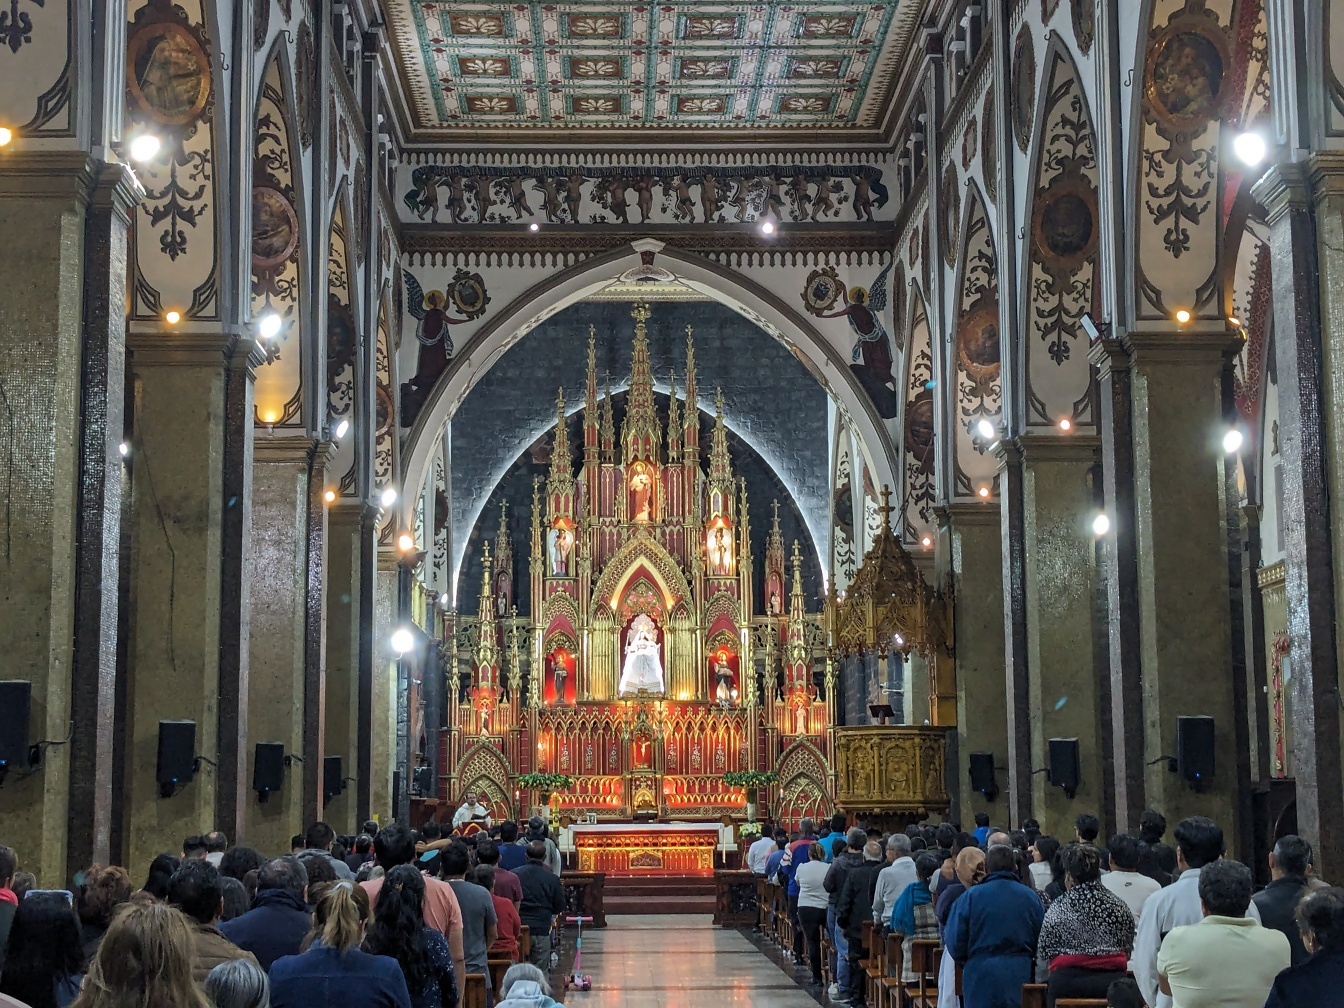 Personnes dans une église de la Vierge de l’Eau bénite, une célèbre et magnifique basilique catholique romaine à Baños de Agua Santa, en Équateur